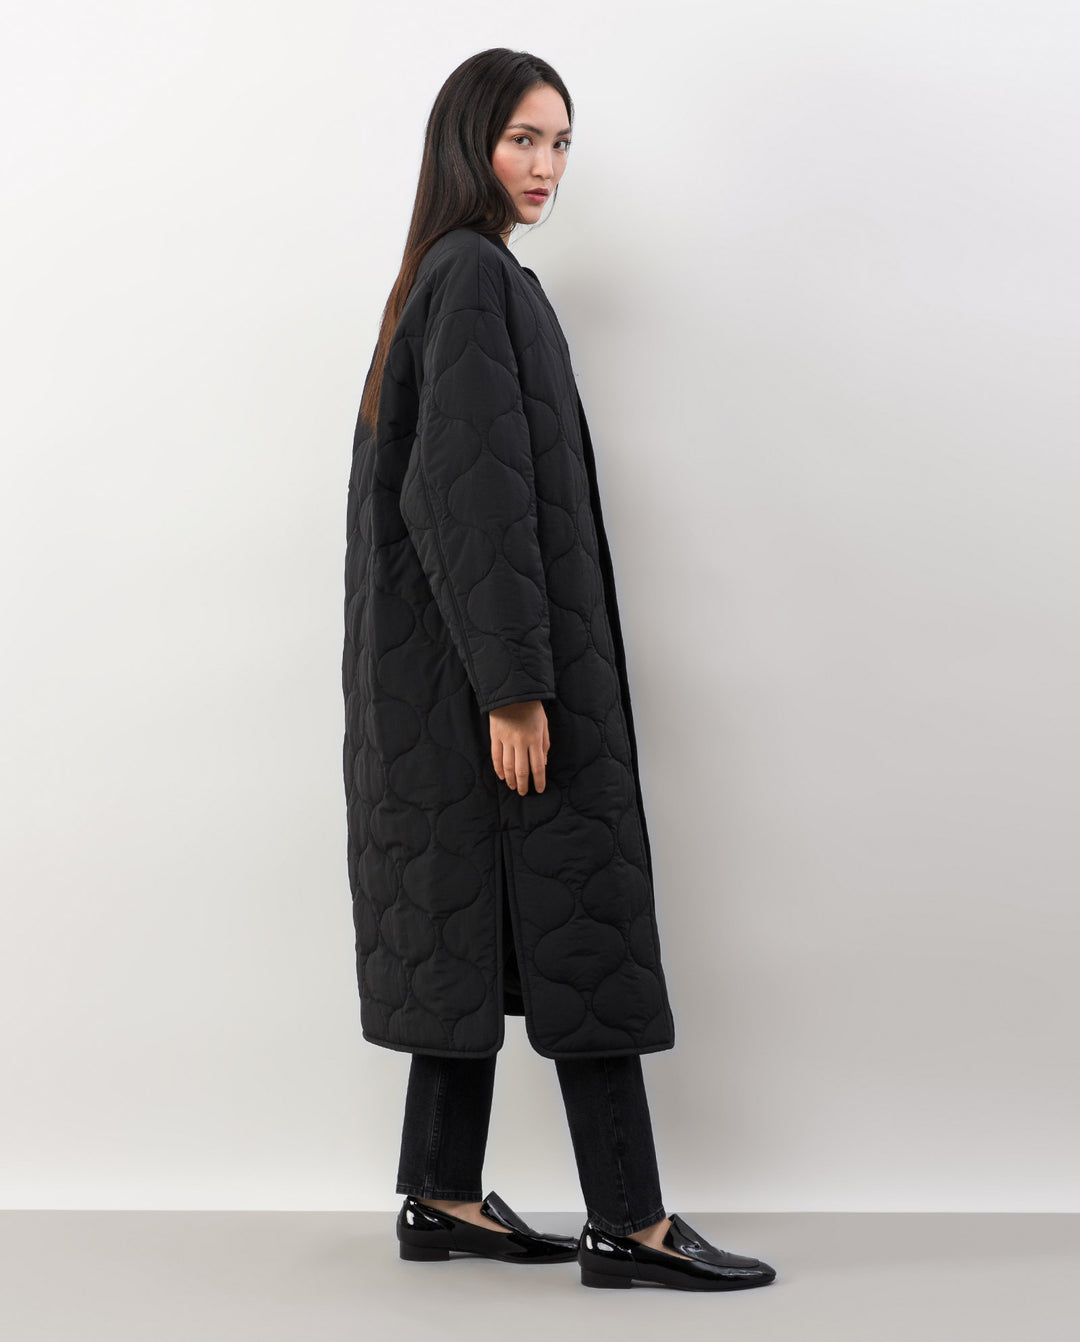 Chiara coat in black